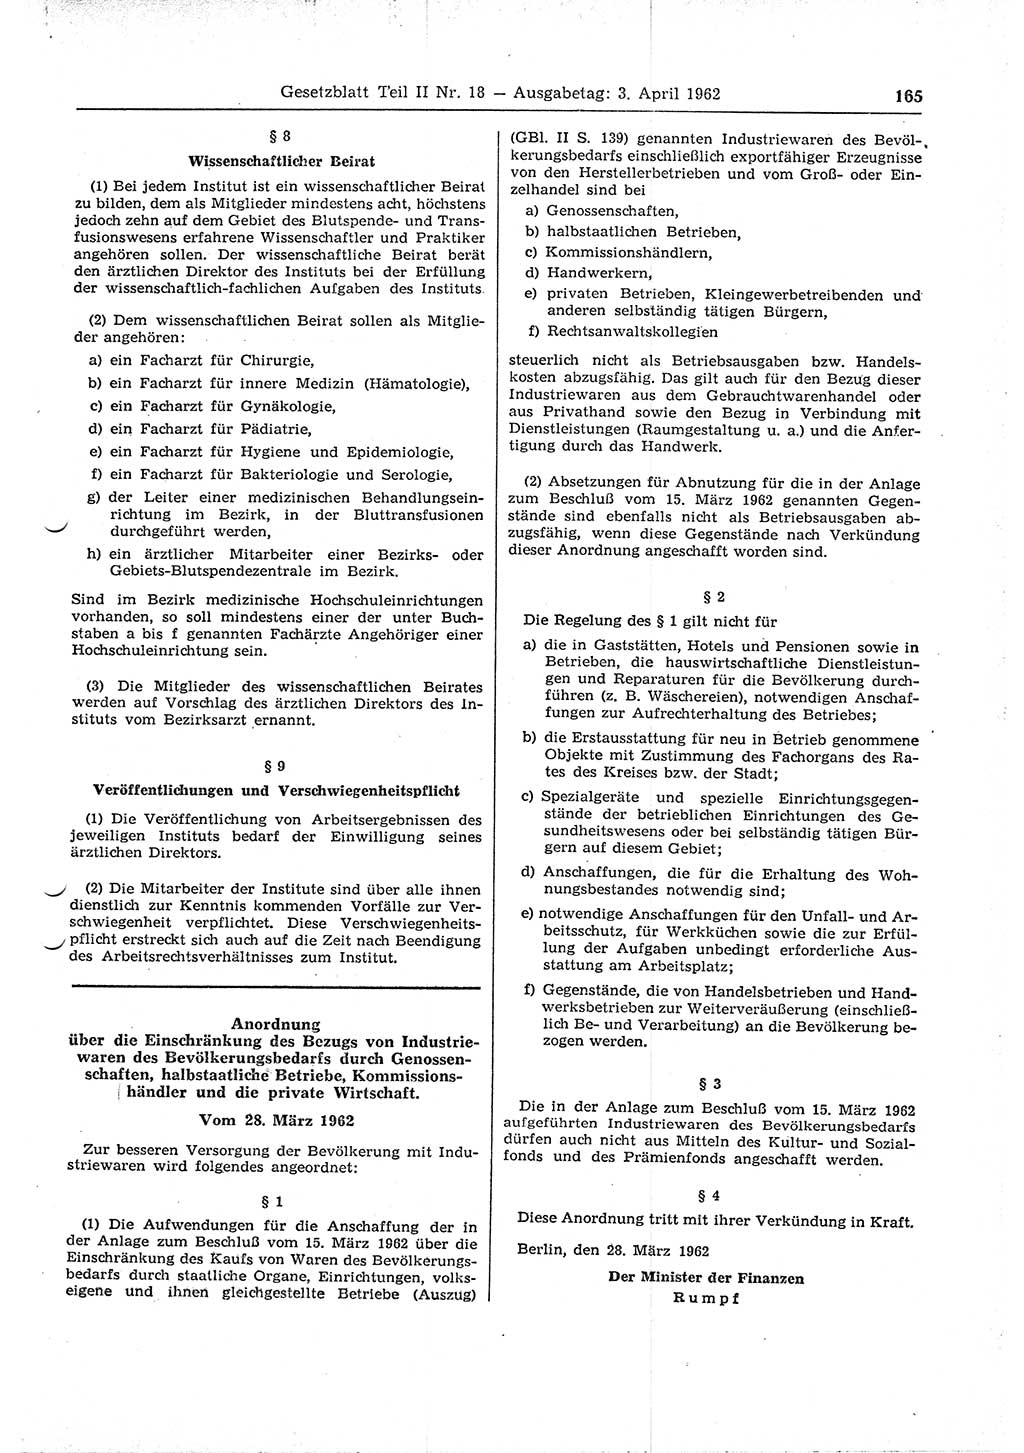 Gesetzblatt (GBl.) der Deutschen Demokratischen Republik (DDR) Teil ⅠⅠ 1962, Seite 165 (GBl. DDR ⅠⅠ 1962, S. 165)